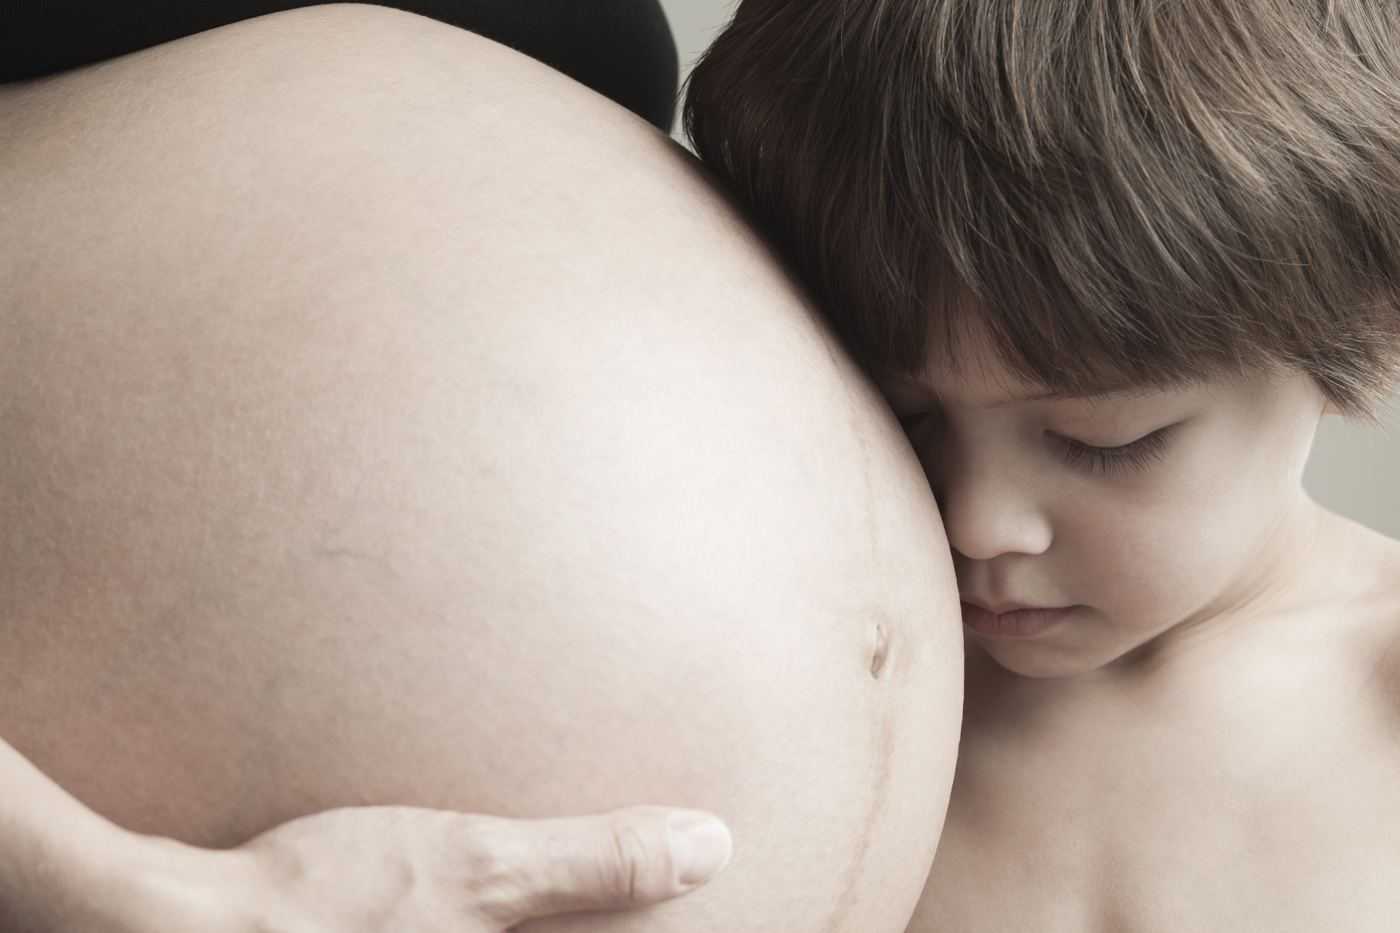 Икота ребенка в утробе (животе) матери — норма или патология?